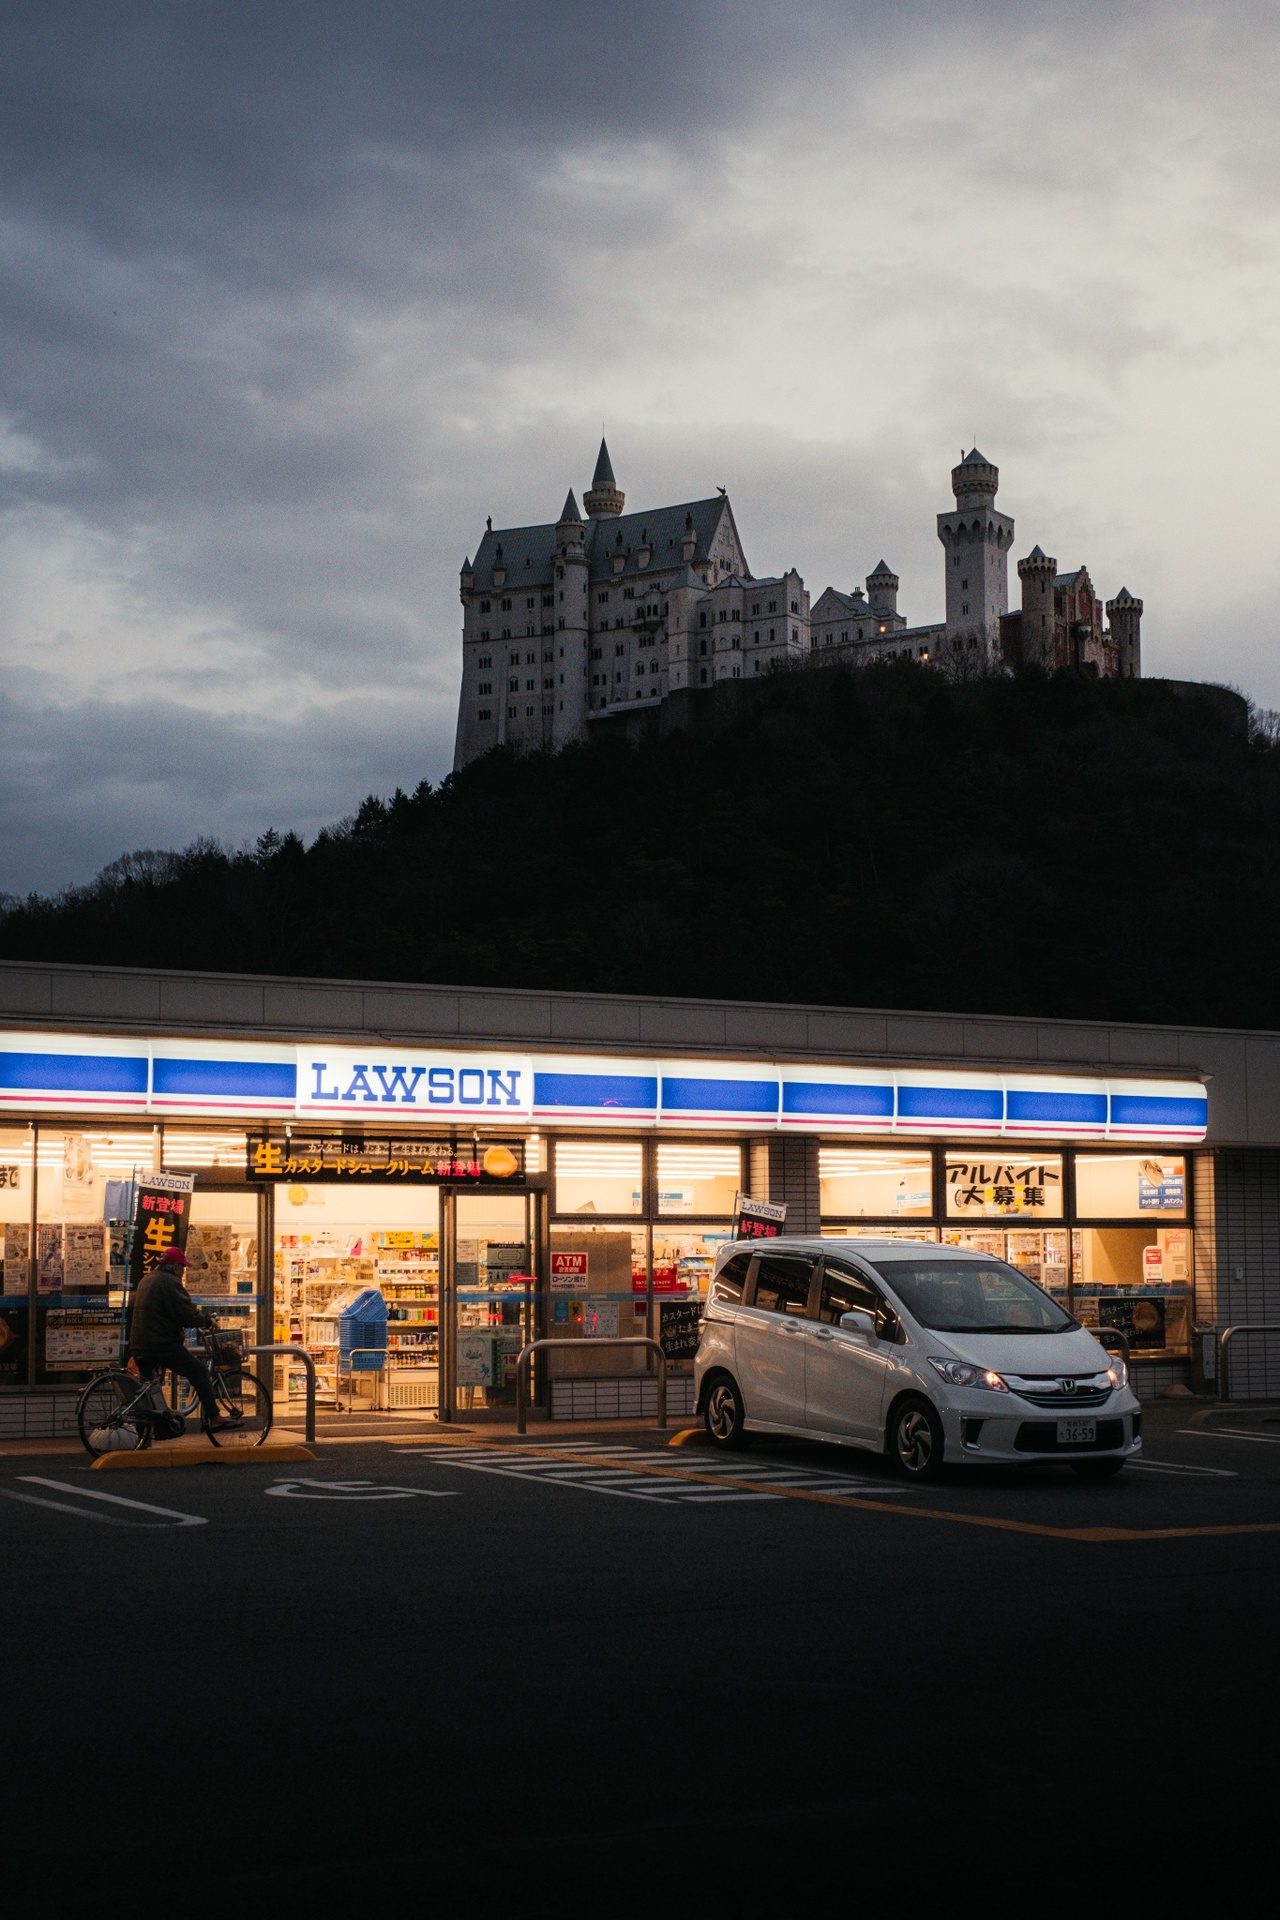 日本摄影师捕捉到便利商店与欧式城堡「白鸟城」同框的画面。图撷自X